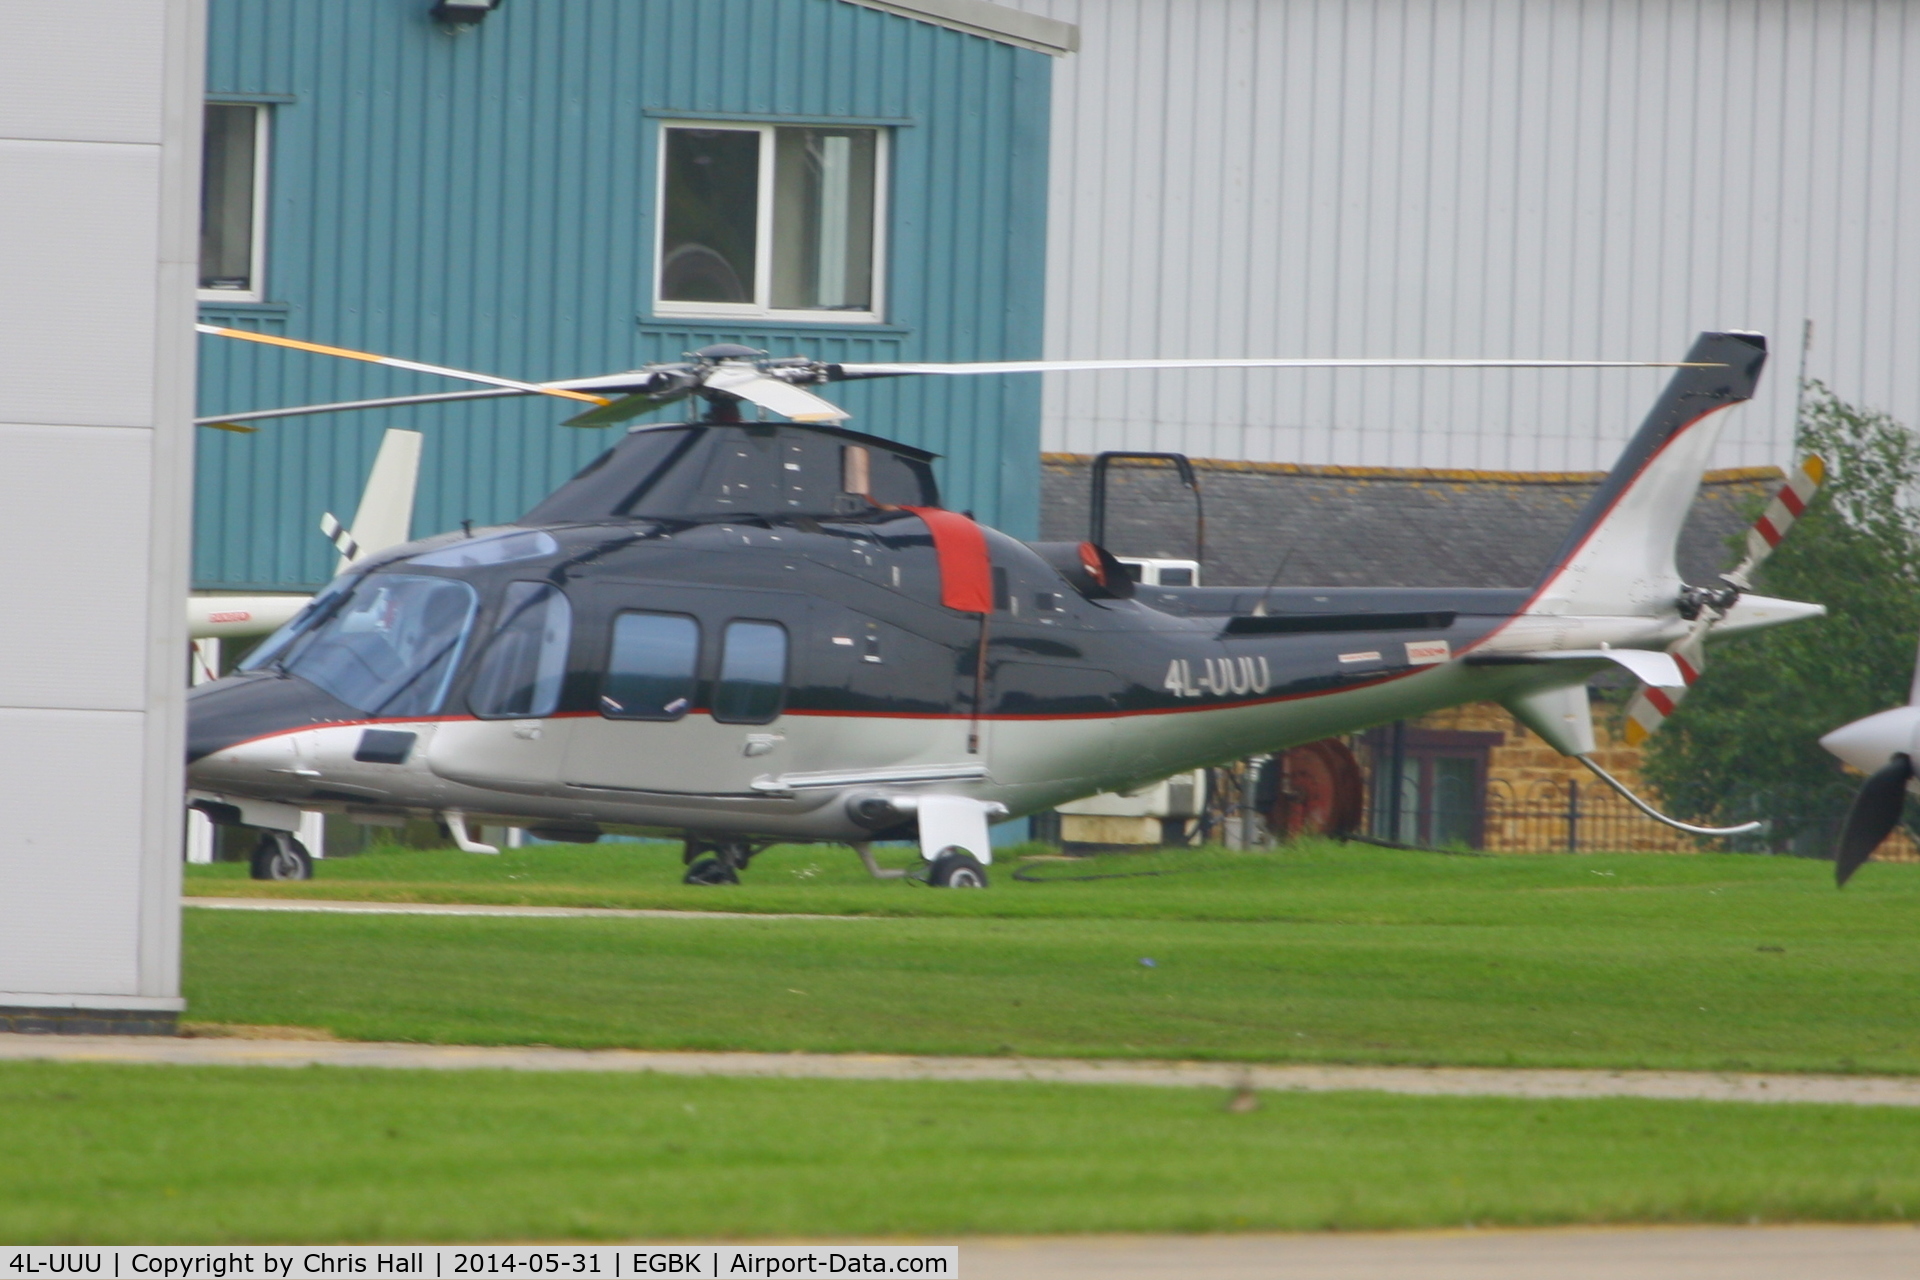 4L-UUU, 2009 Agusta A109S Grand C/N 22105, at AeroExpo 2014